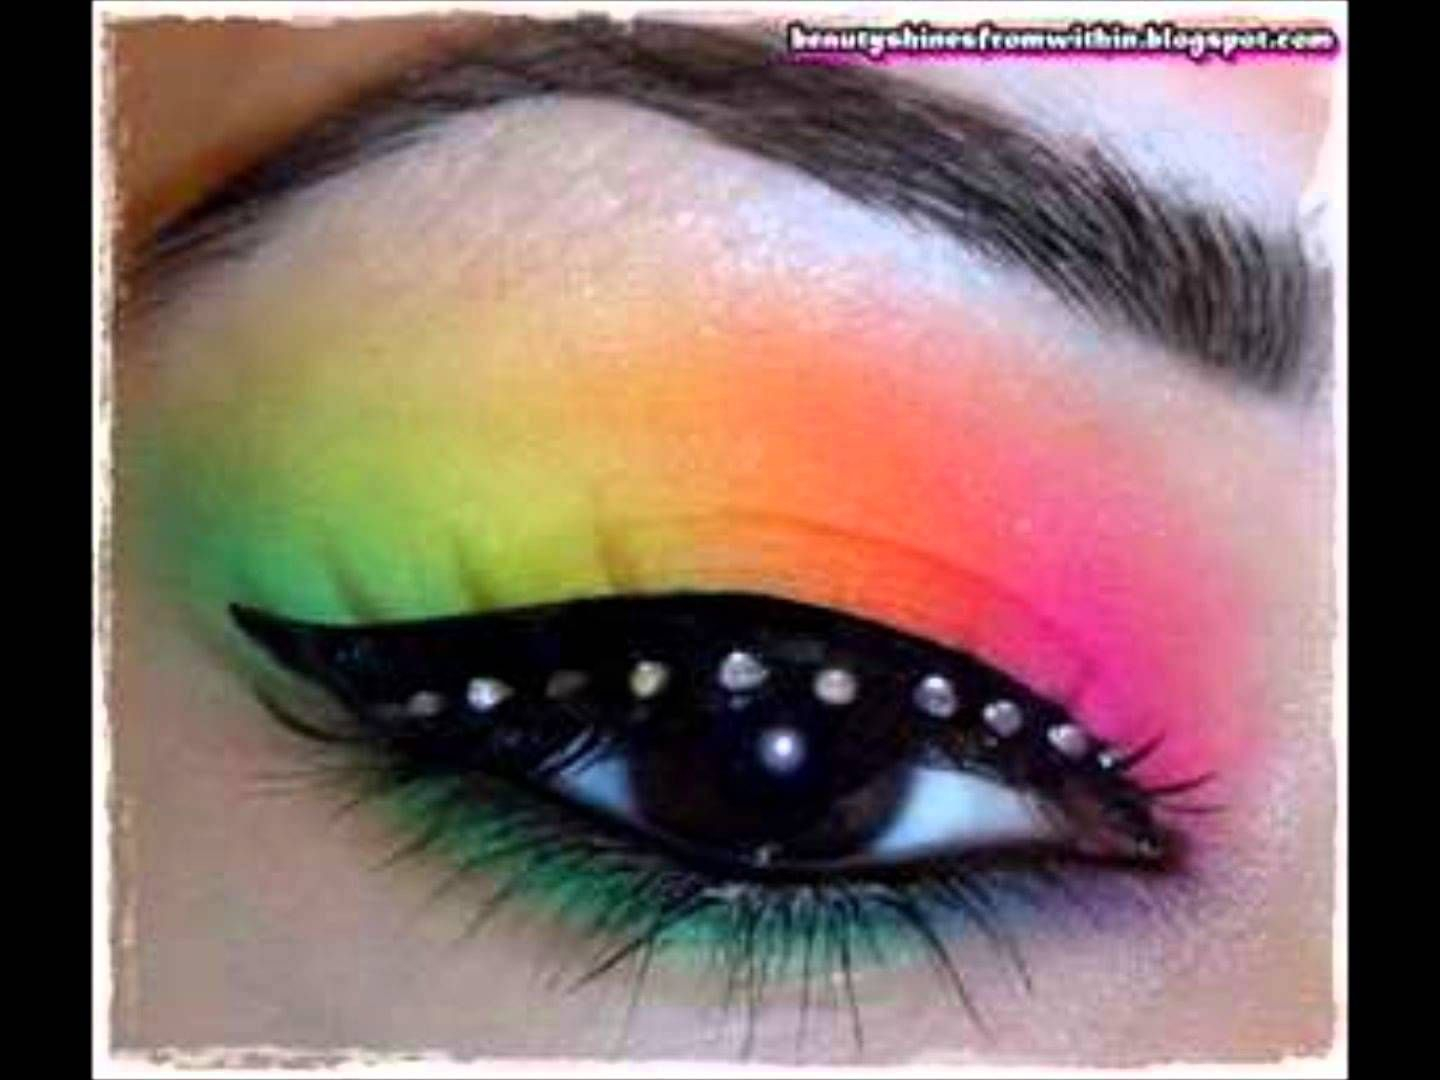 Cool Eye Makeup Images For Cool Eye Makeup Designs Eye Makeup Pinterest Eye